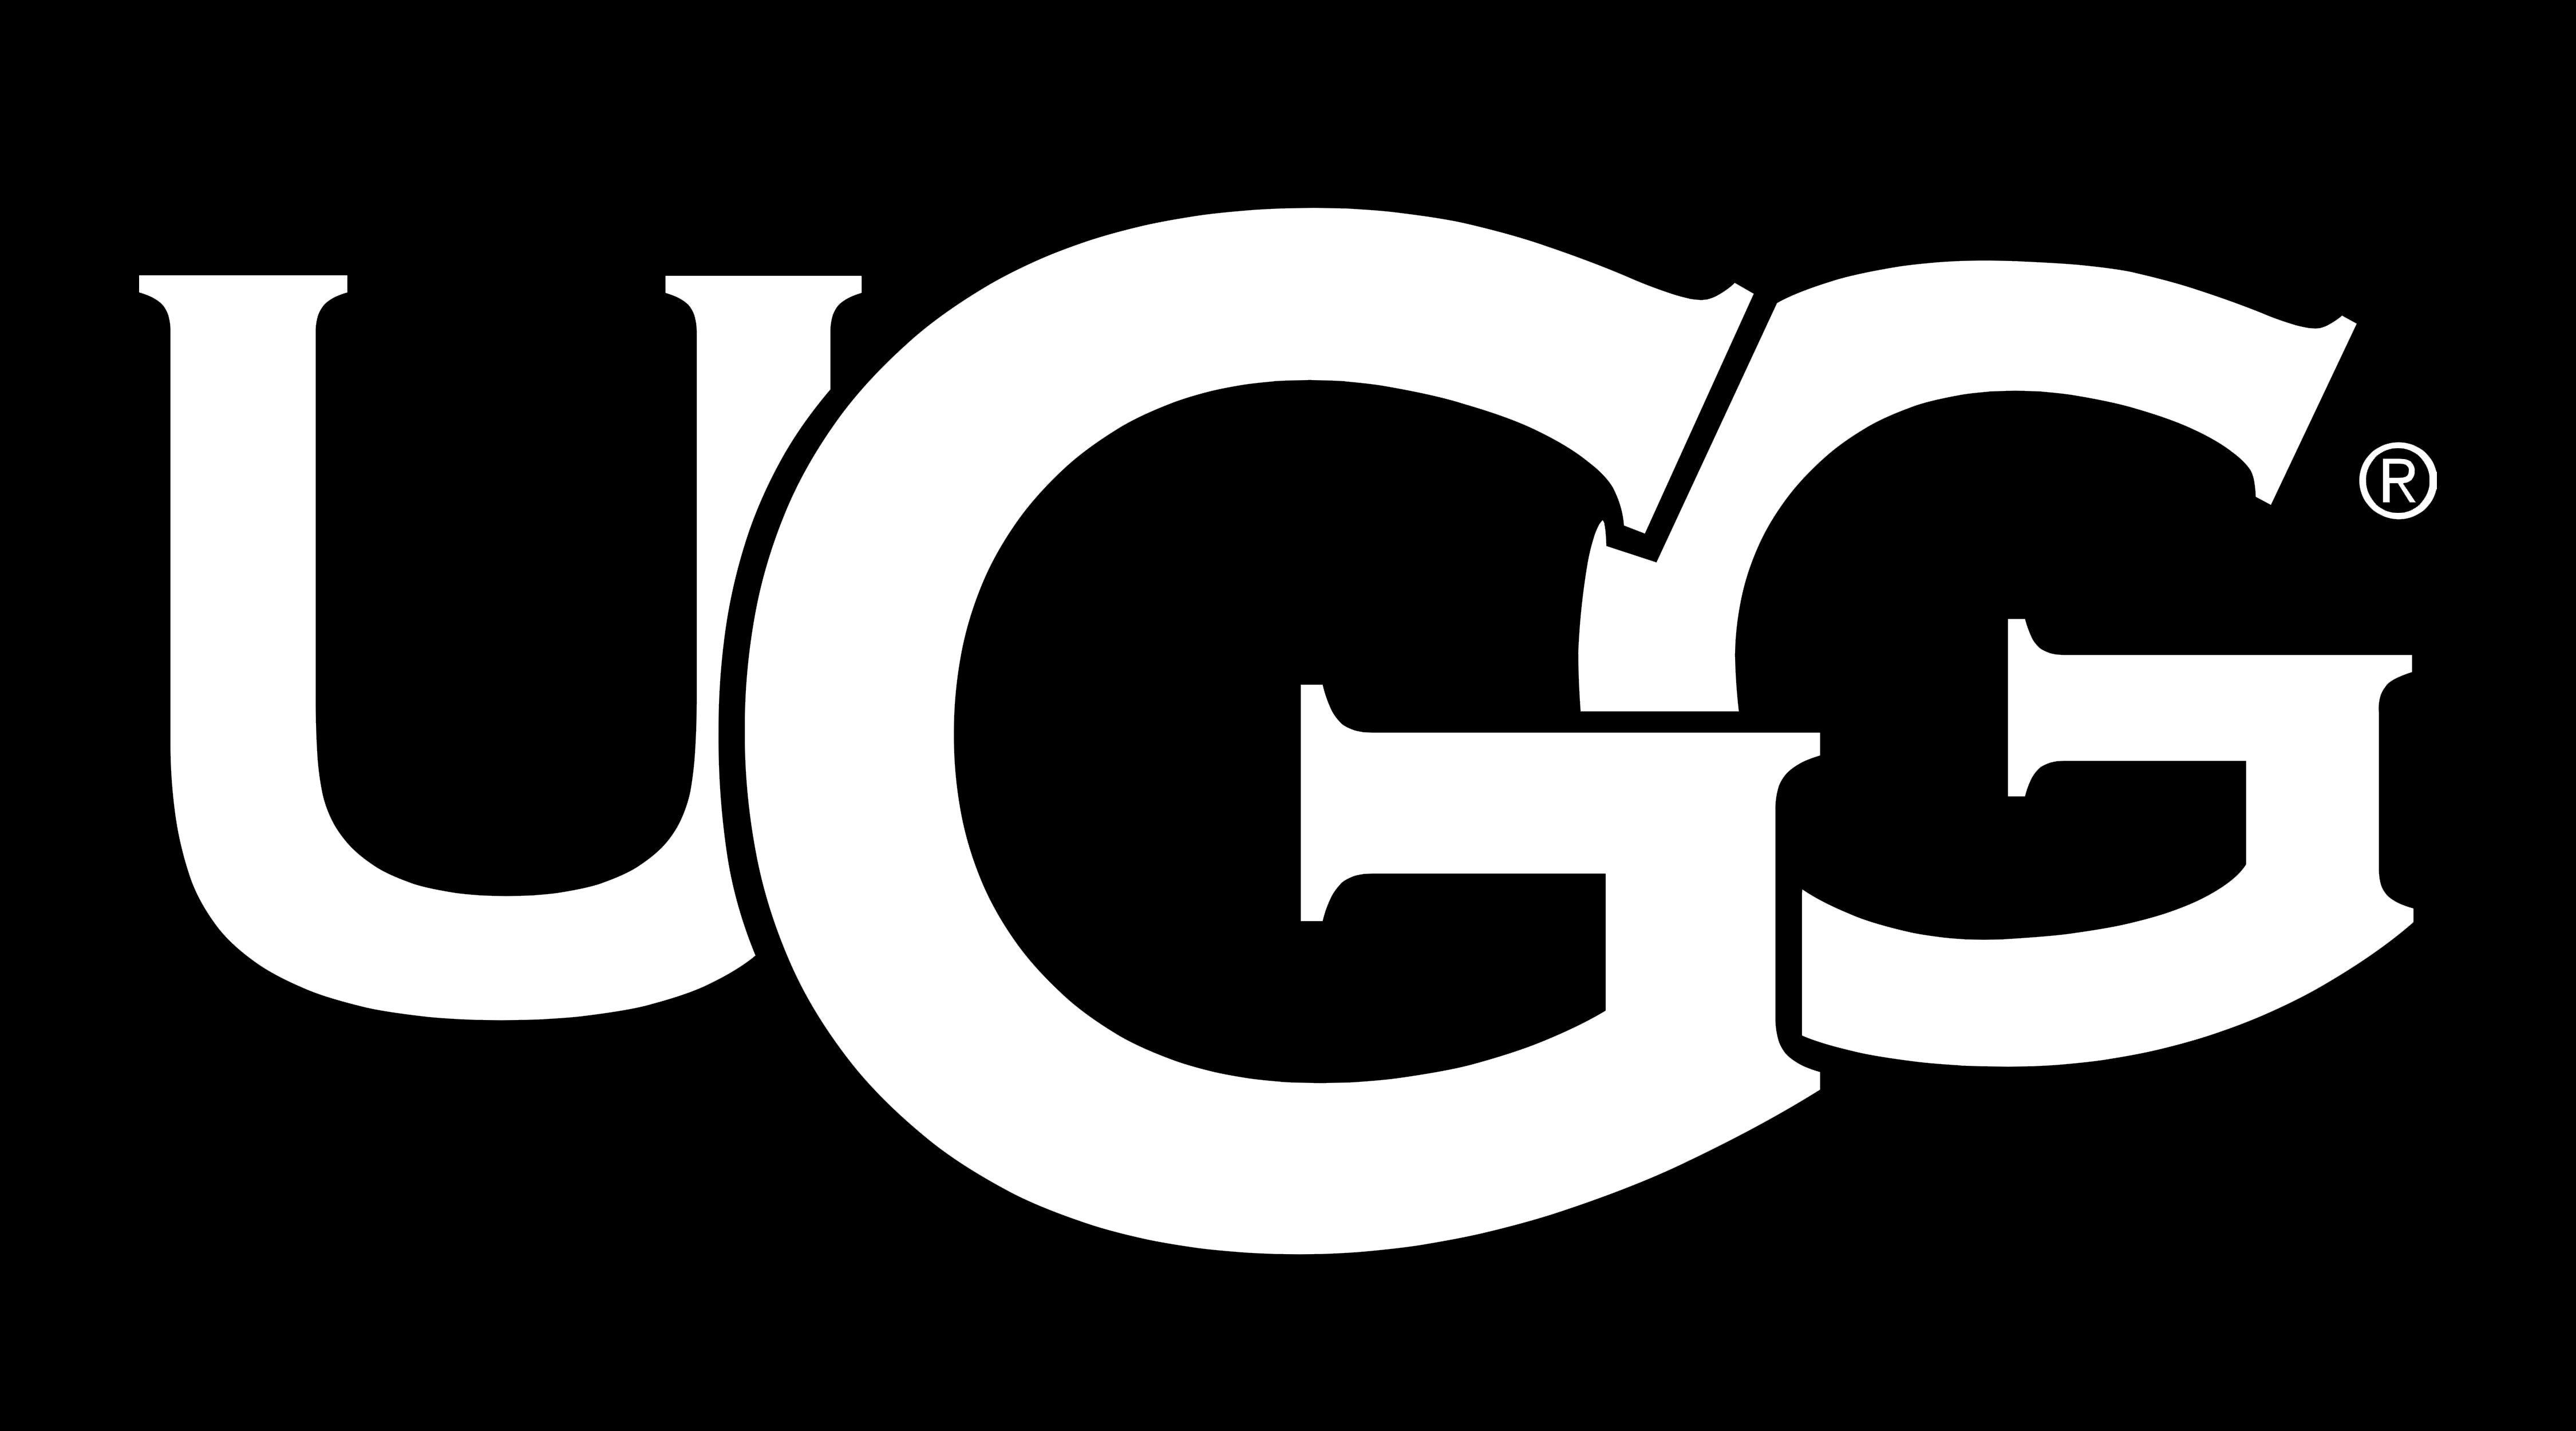 UGG Australia Logo - UGG Logo, UGG Symbol, Meaning, History and Evolution